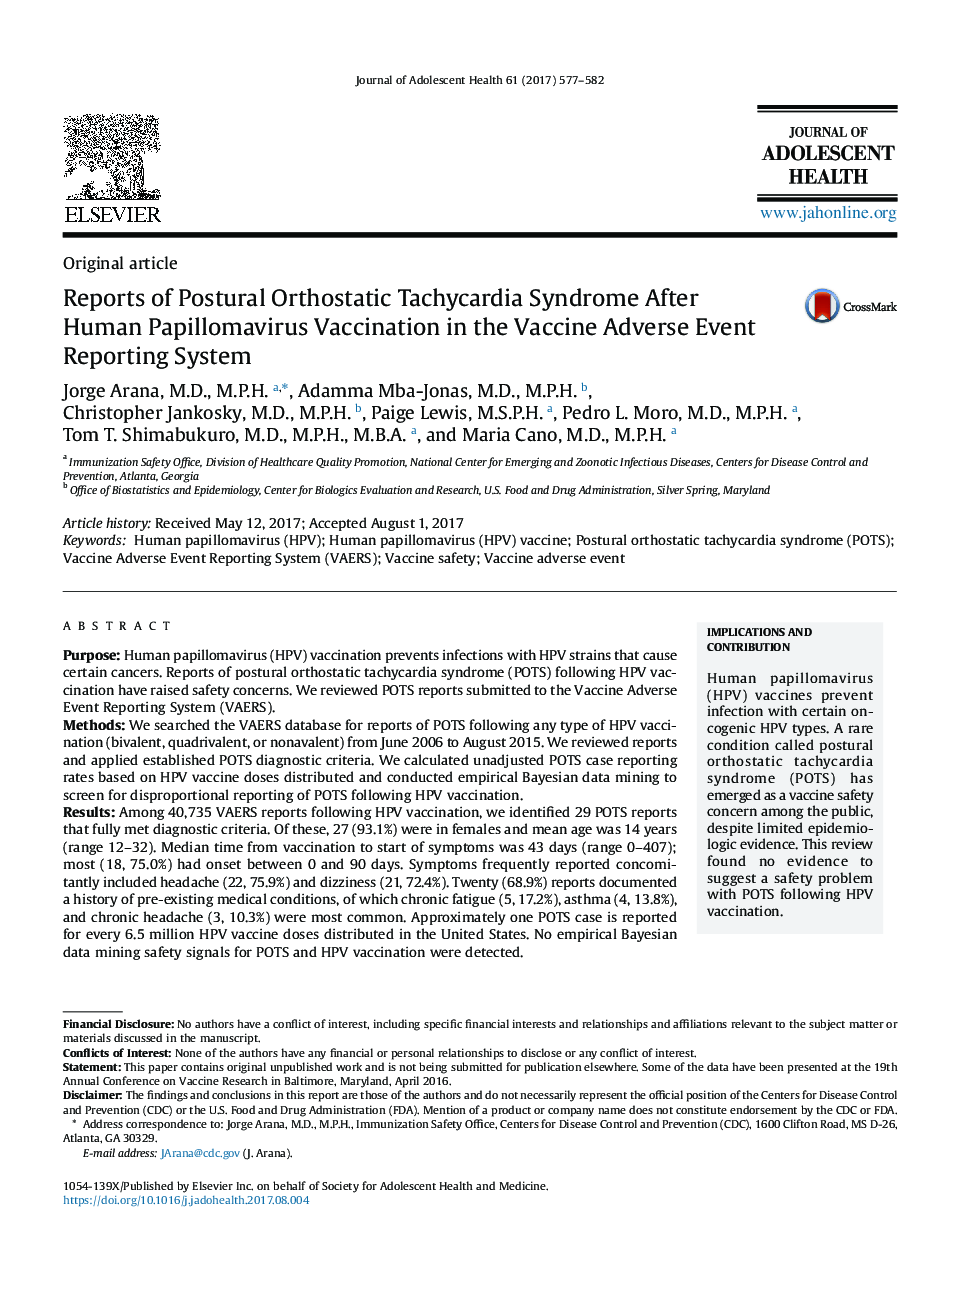 گزارشات سندرم واژینوز تاثیرپذیری موضعی پس از واکسیناسیون ویروس پاپیلم ویوا در سیستم گزارش دهی گزارشات مربوط به آسیب واکسن 